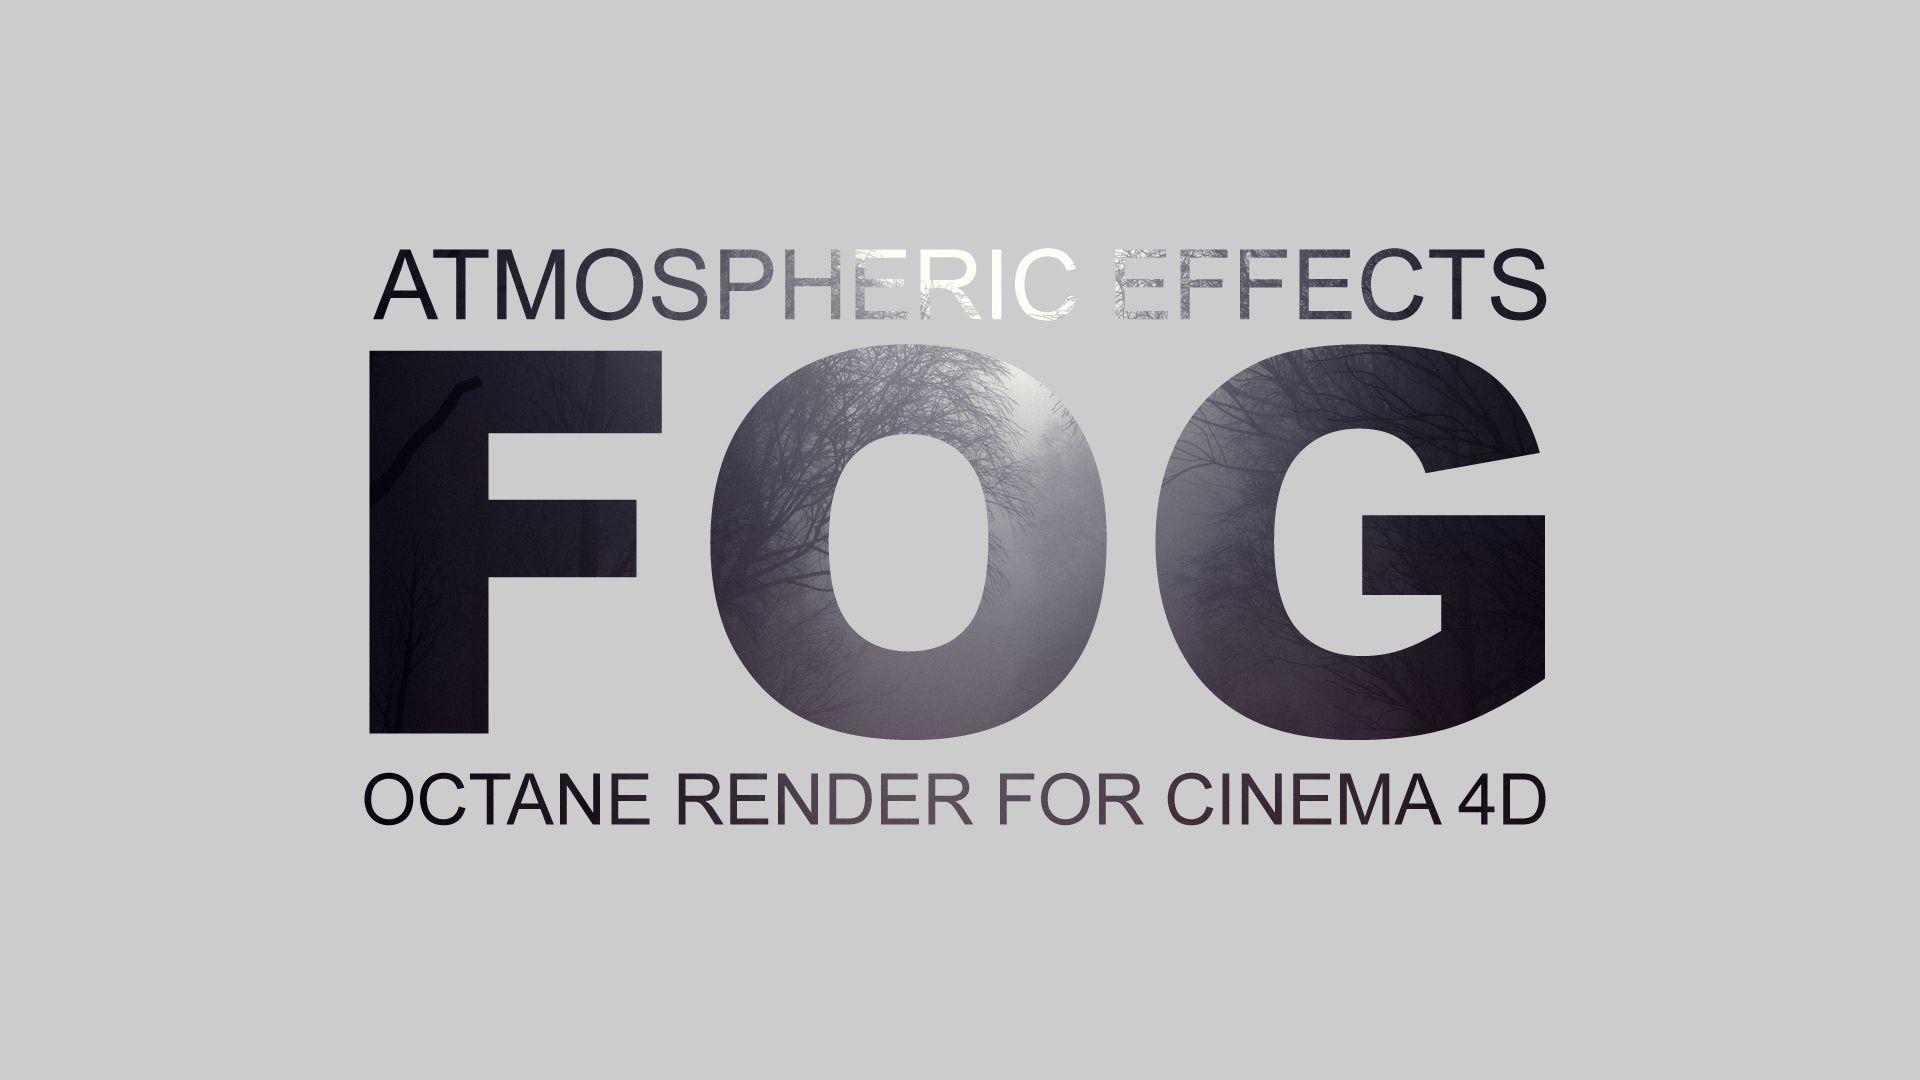 Fog Logo - Fog with OctaneRender for Cinema 4D | Inlifethrill designs